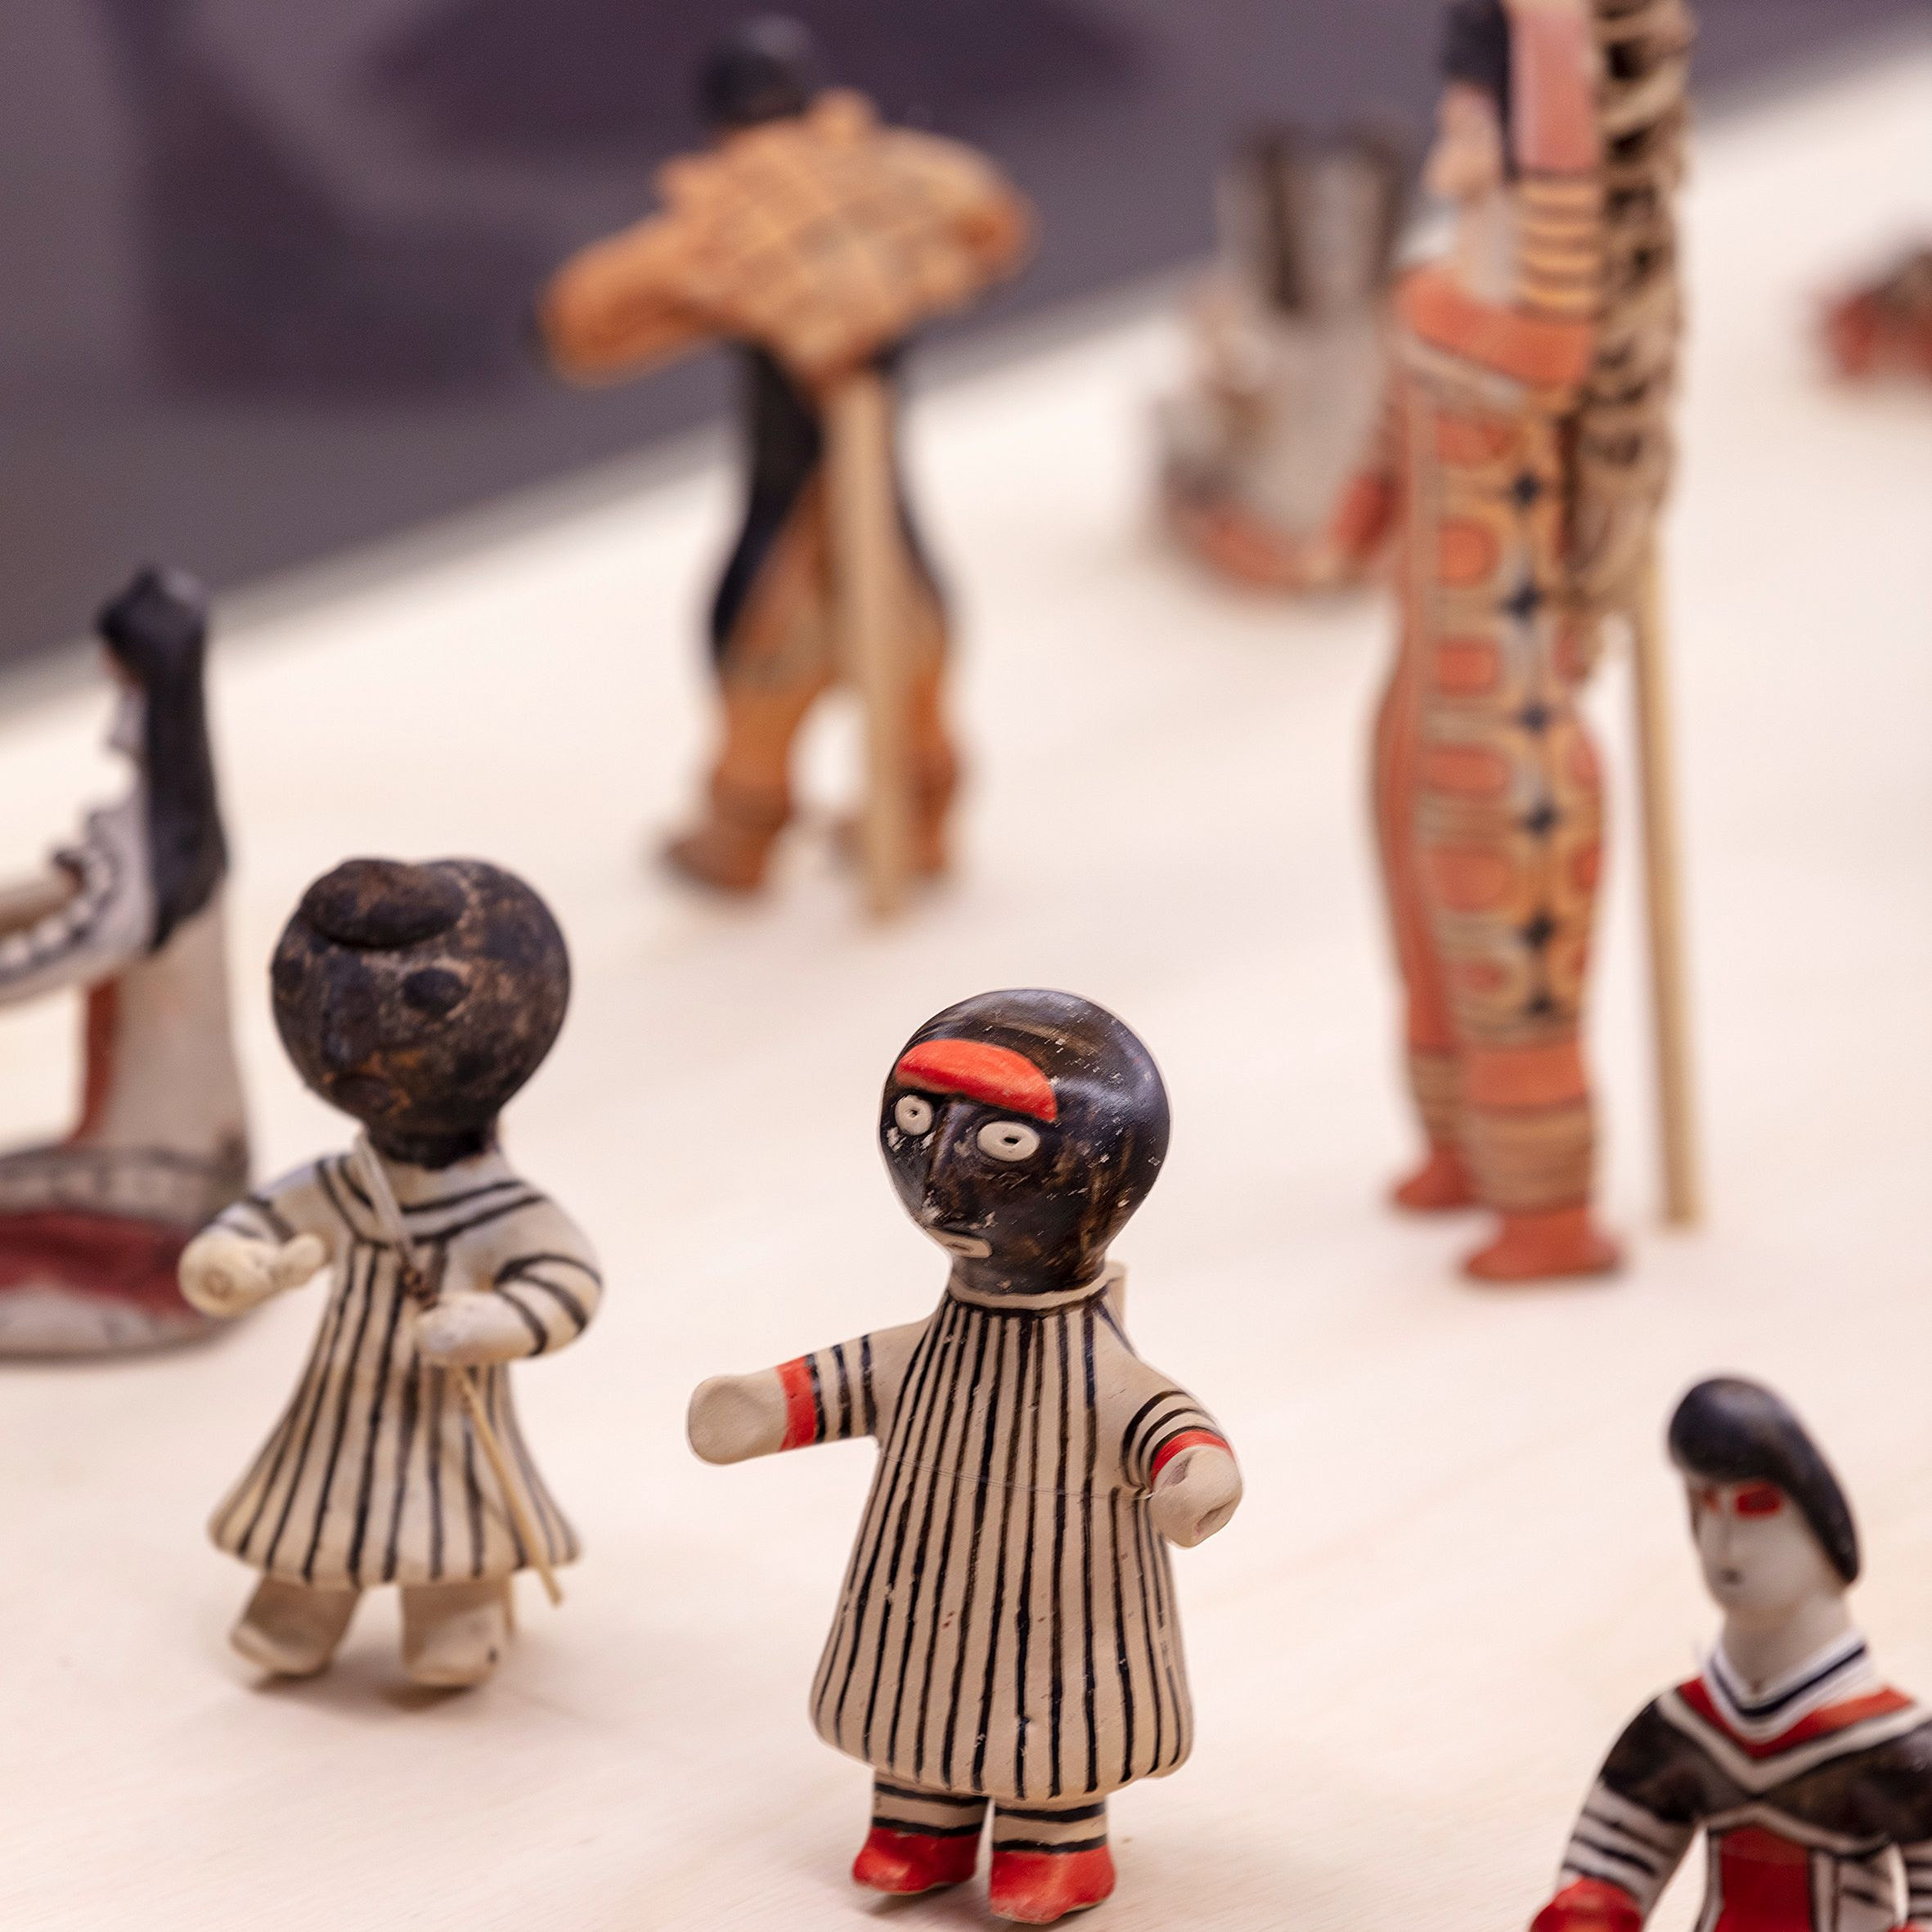 imagem de bonecas feitas pelos indígenas da etnia baniwa. elas vestem roupas listradas de branco e preto